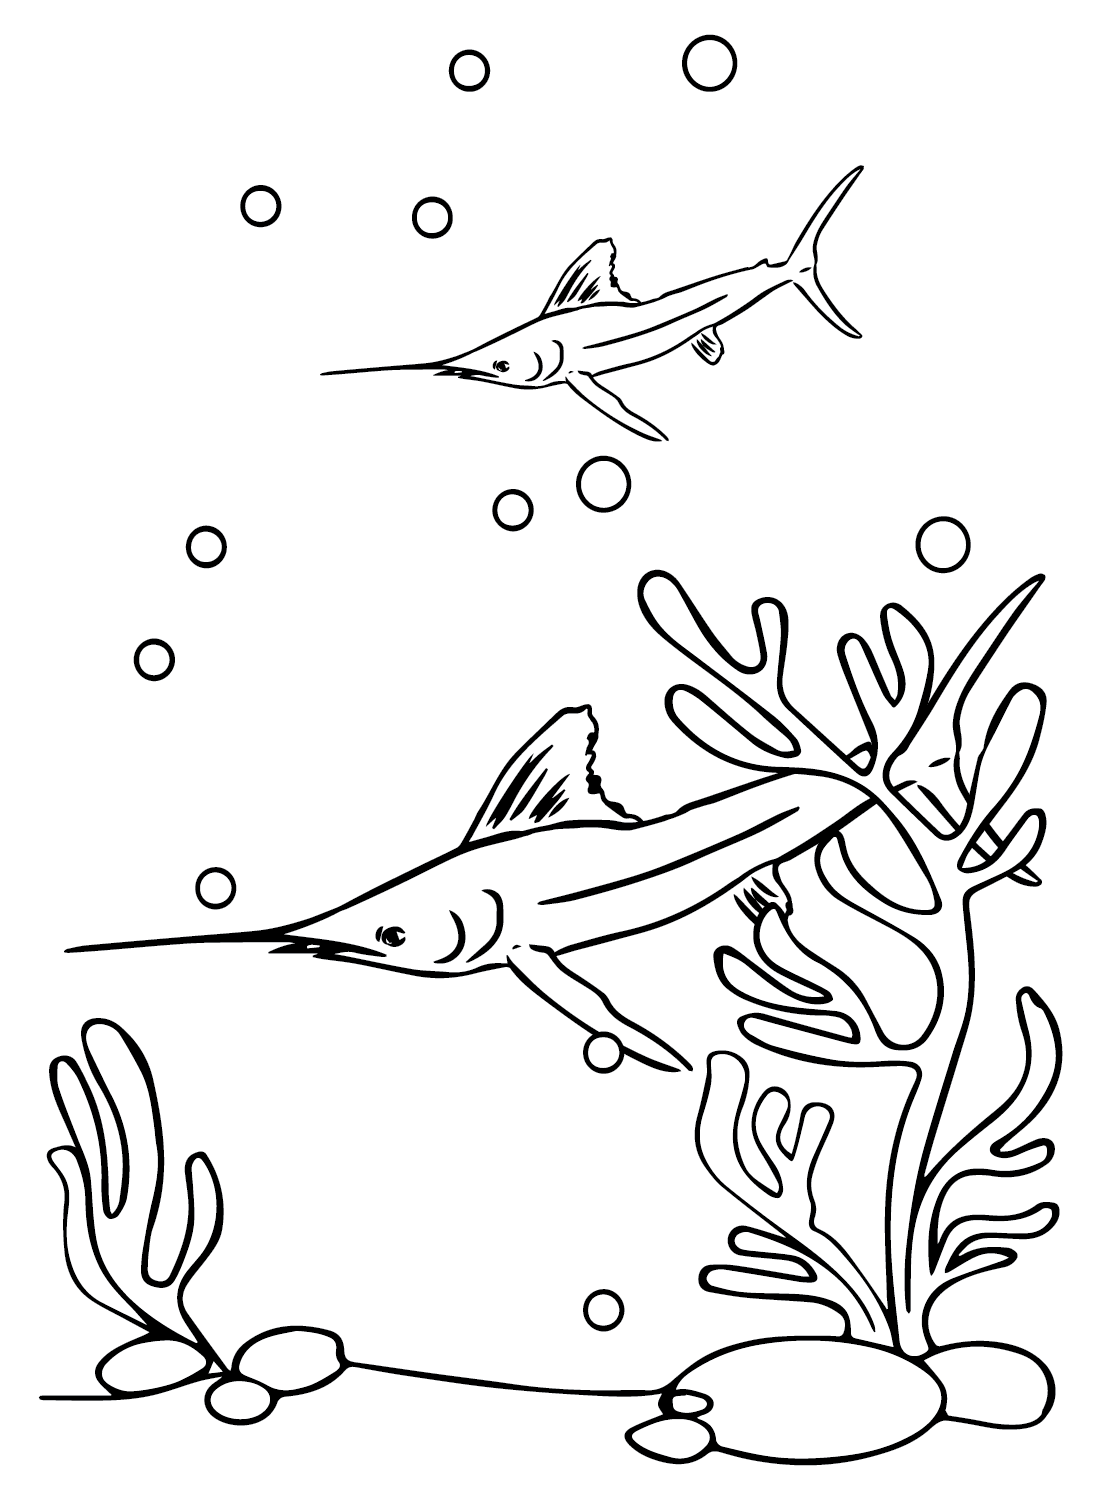 Folhas coloridas de peixe-espada da Swordfish